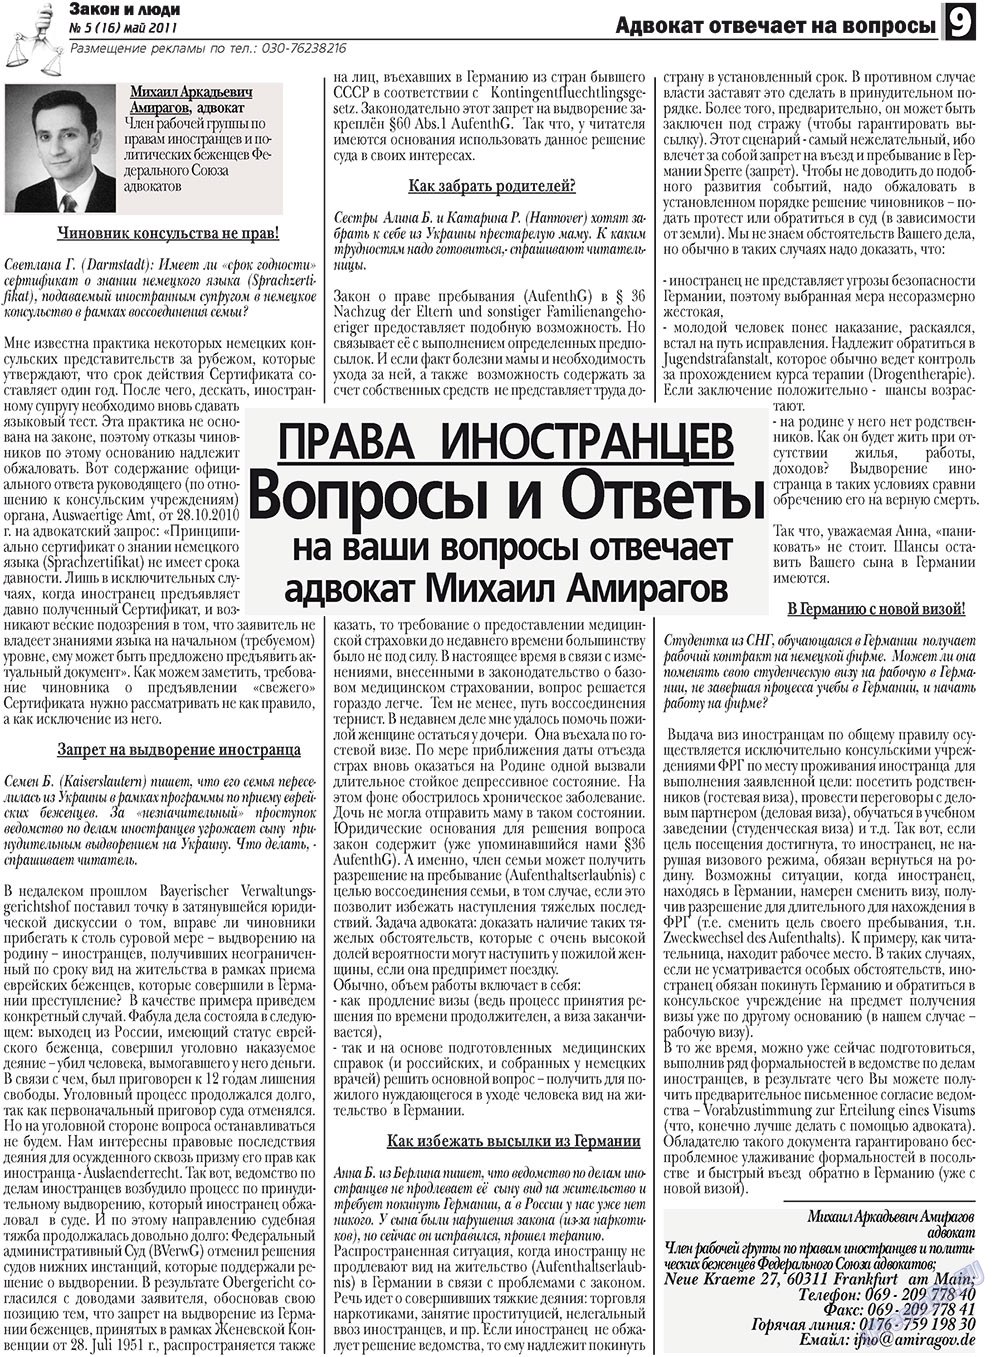 Закон и люди, газета. 2011 №5 стр.9